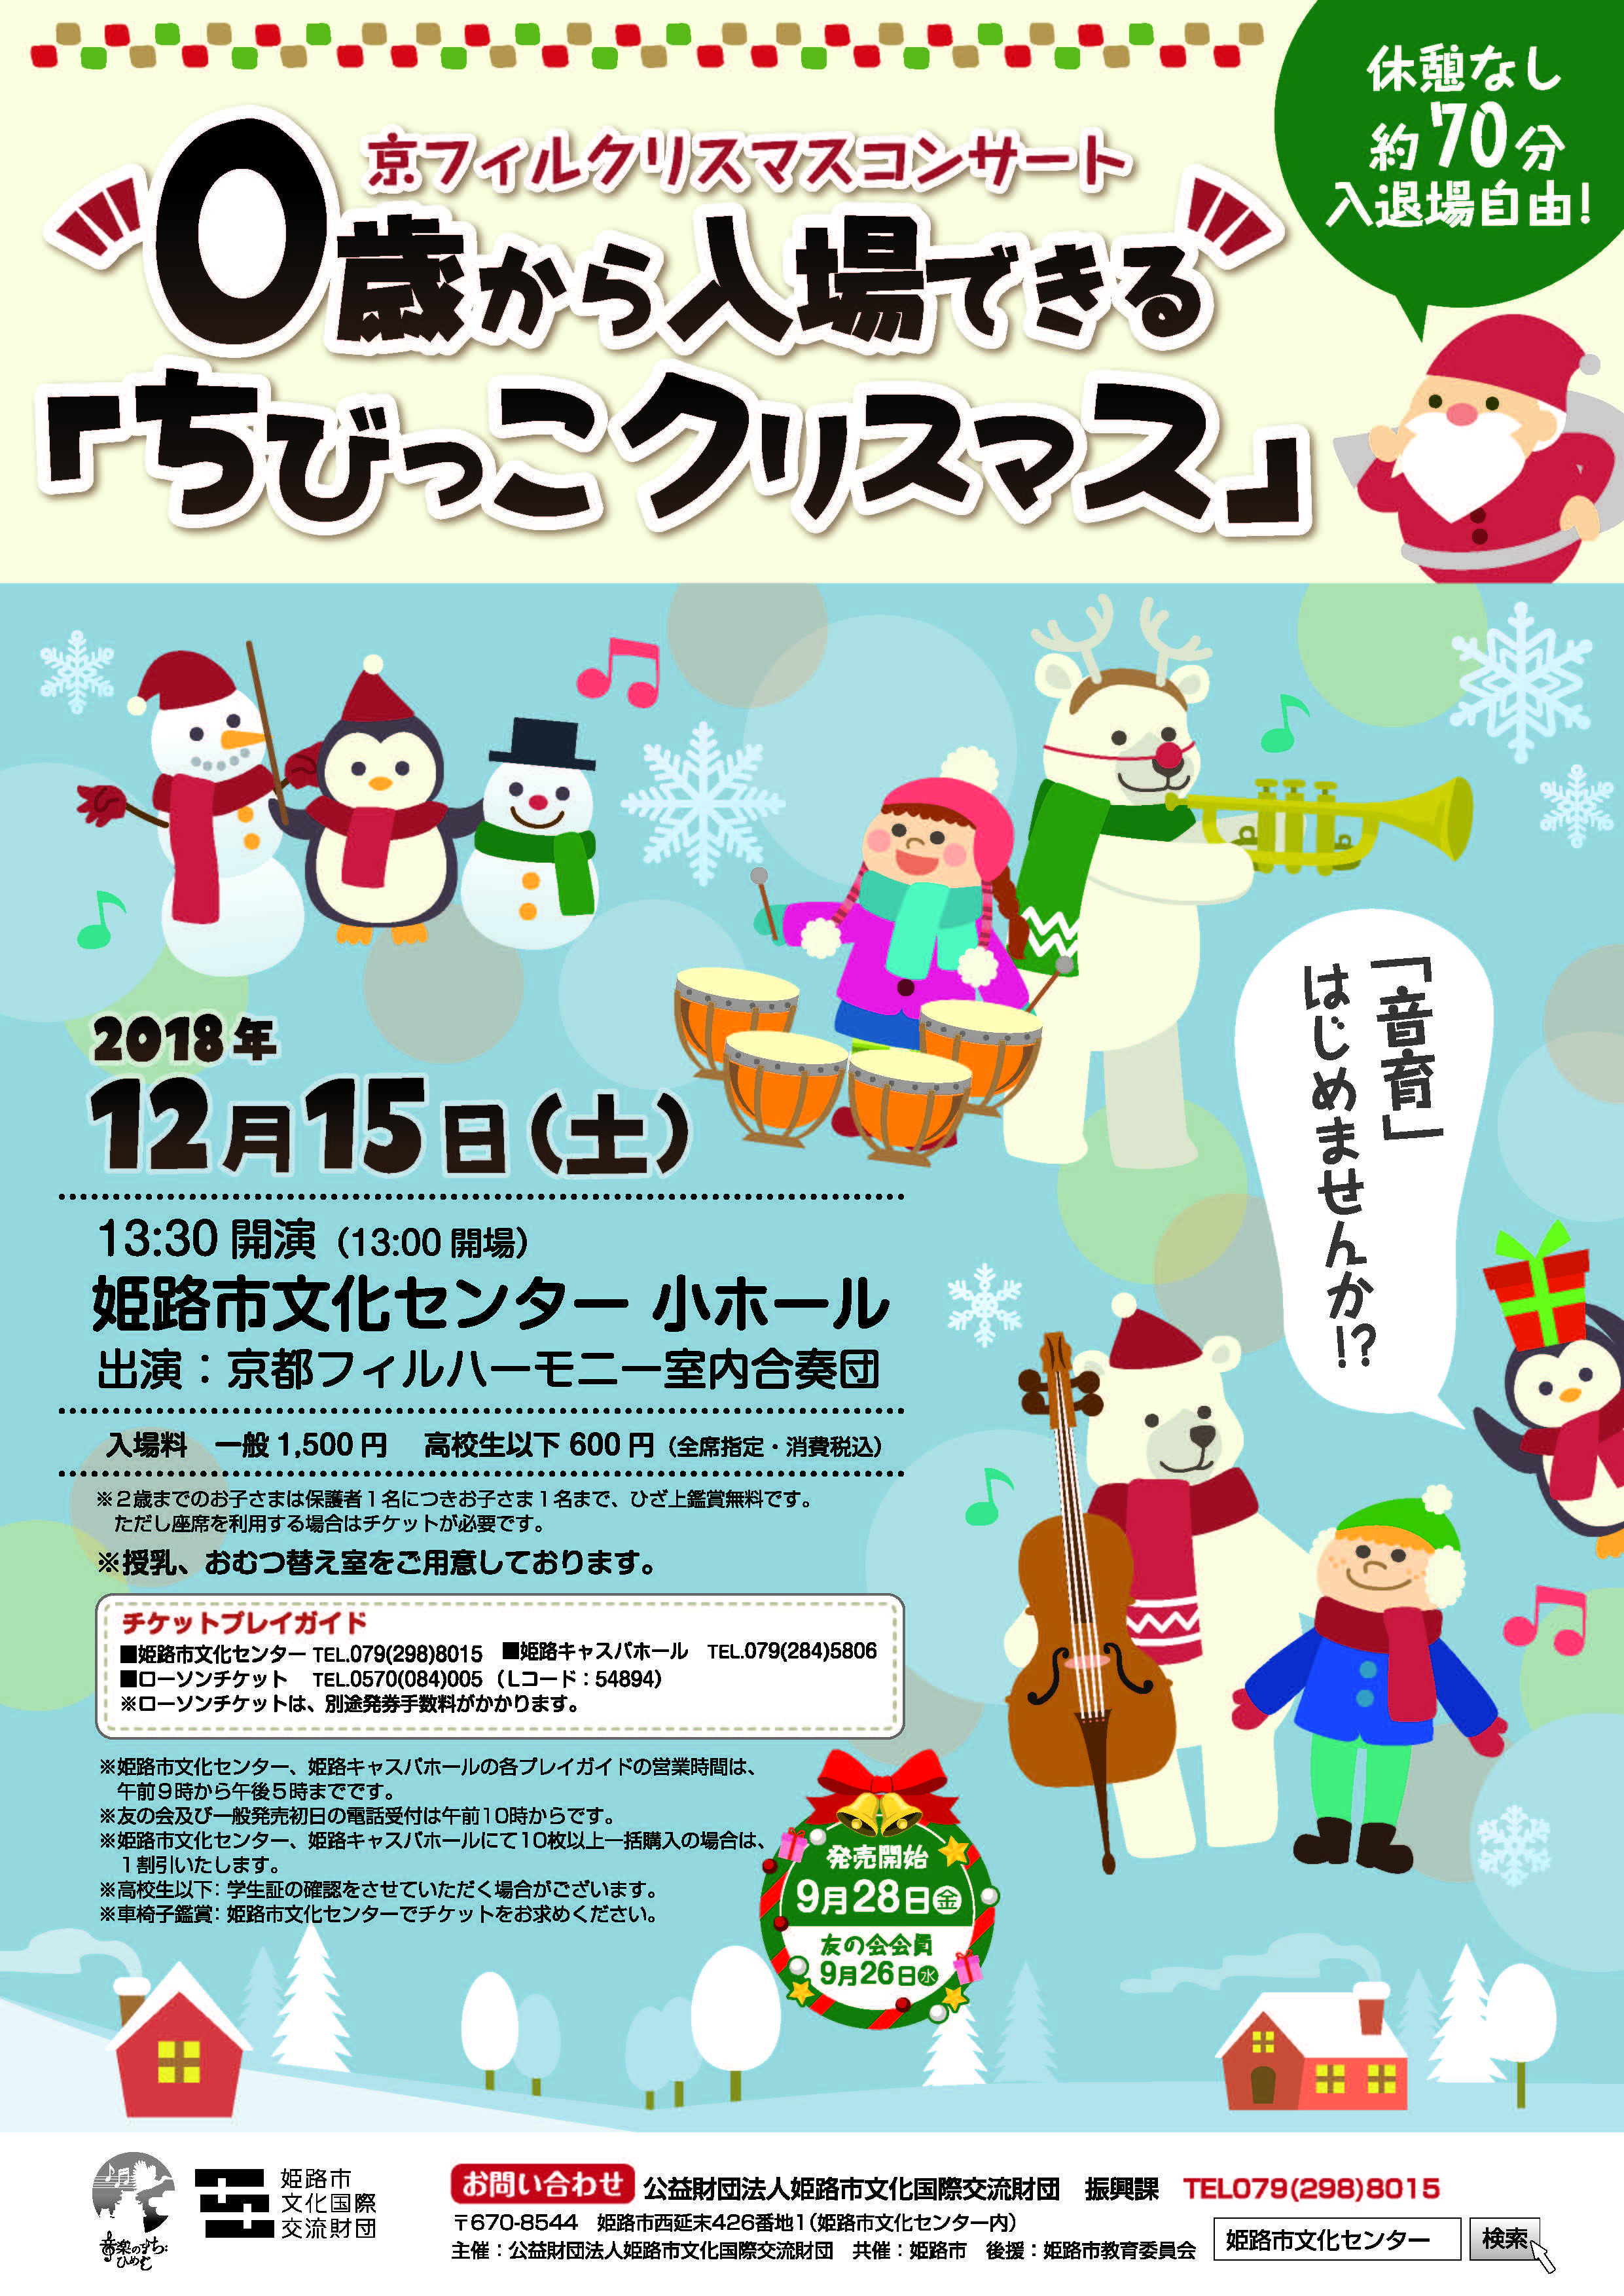 「【姫路市文化センター】京フィルクリスマスコンサート ０歳から入場できる「ちびっこクリスマス」」のチラシ